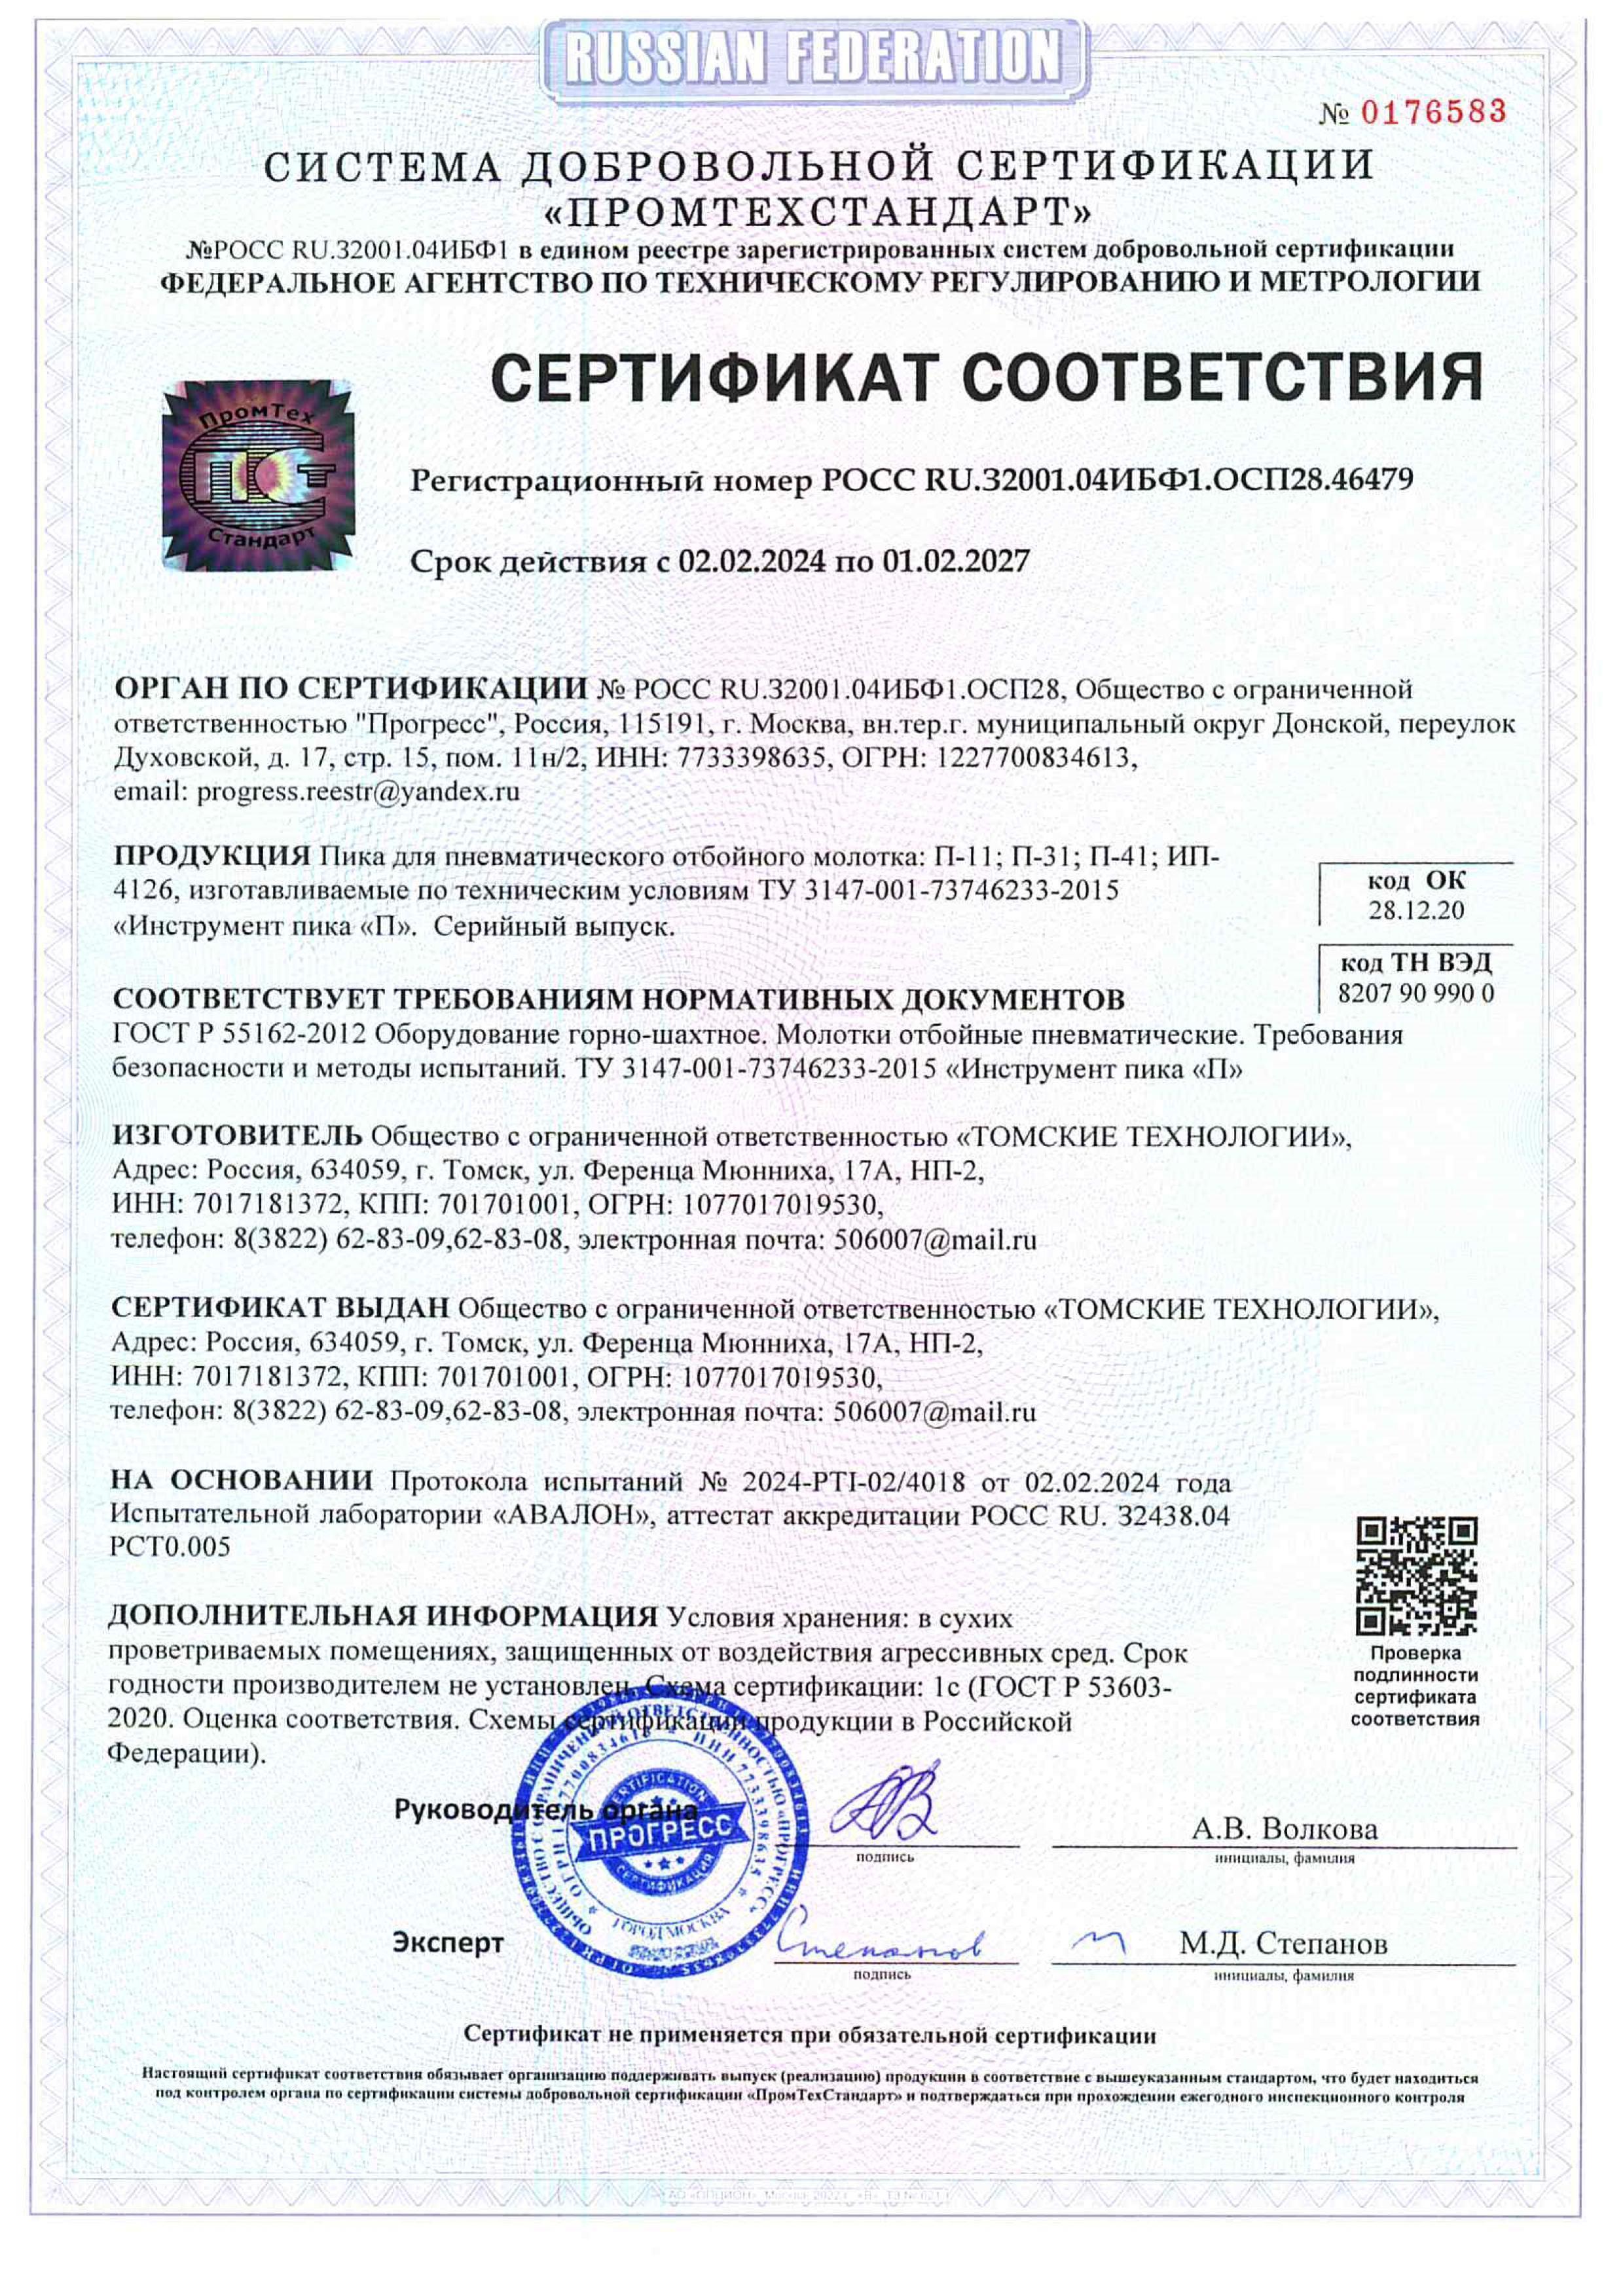 Сертификат на пики П-11, зубила П-31 к отбойным молоткам. Изготовитель: ООО Томские технологии.